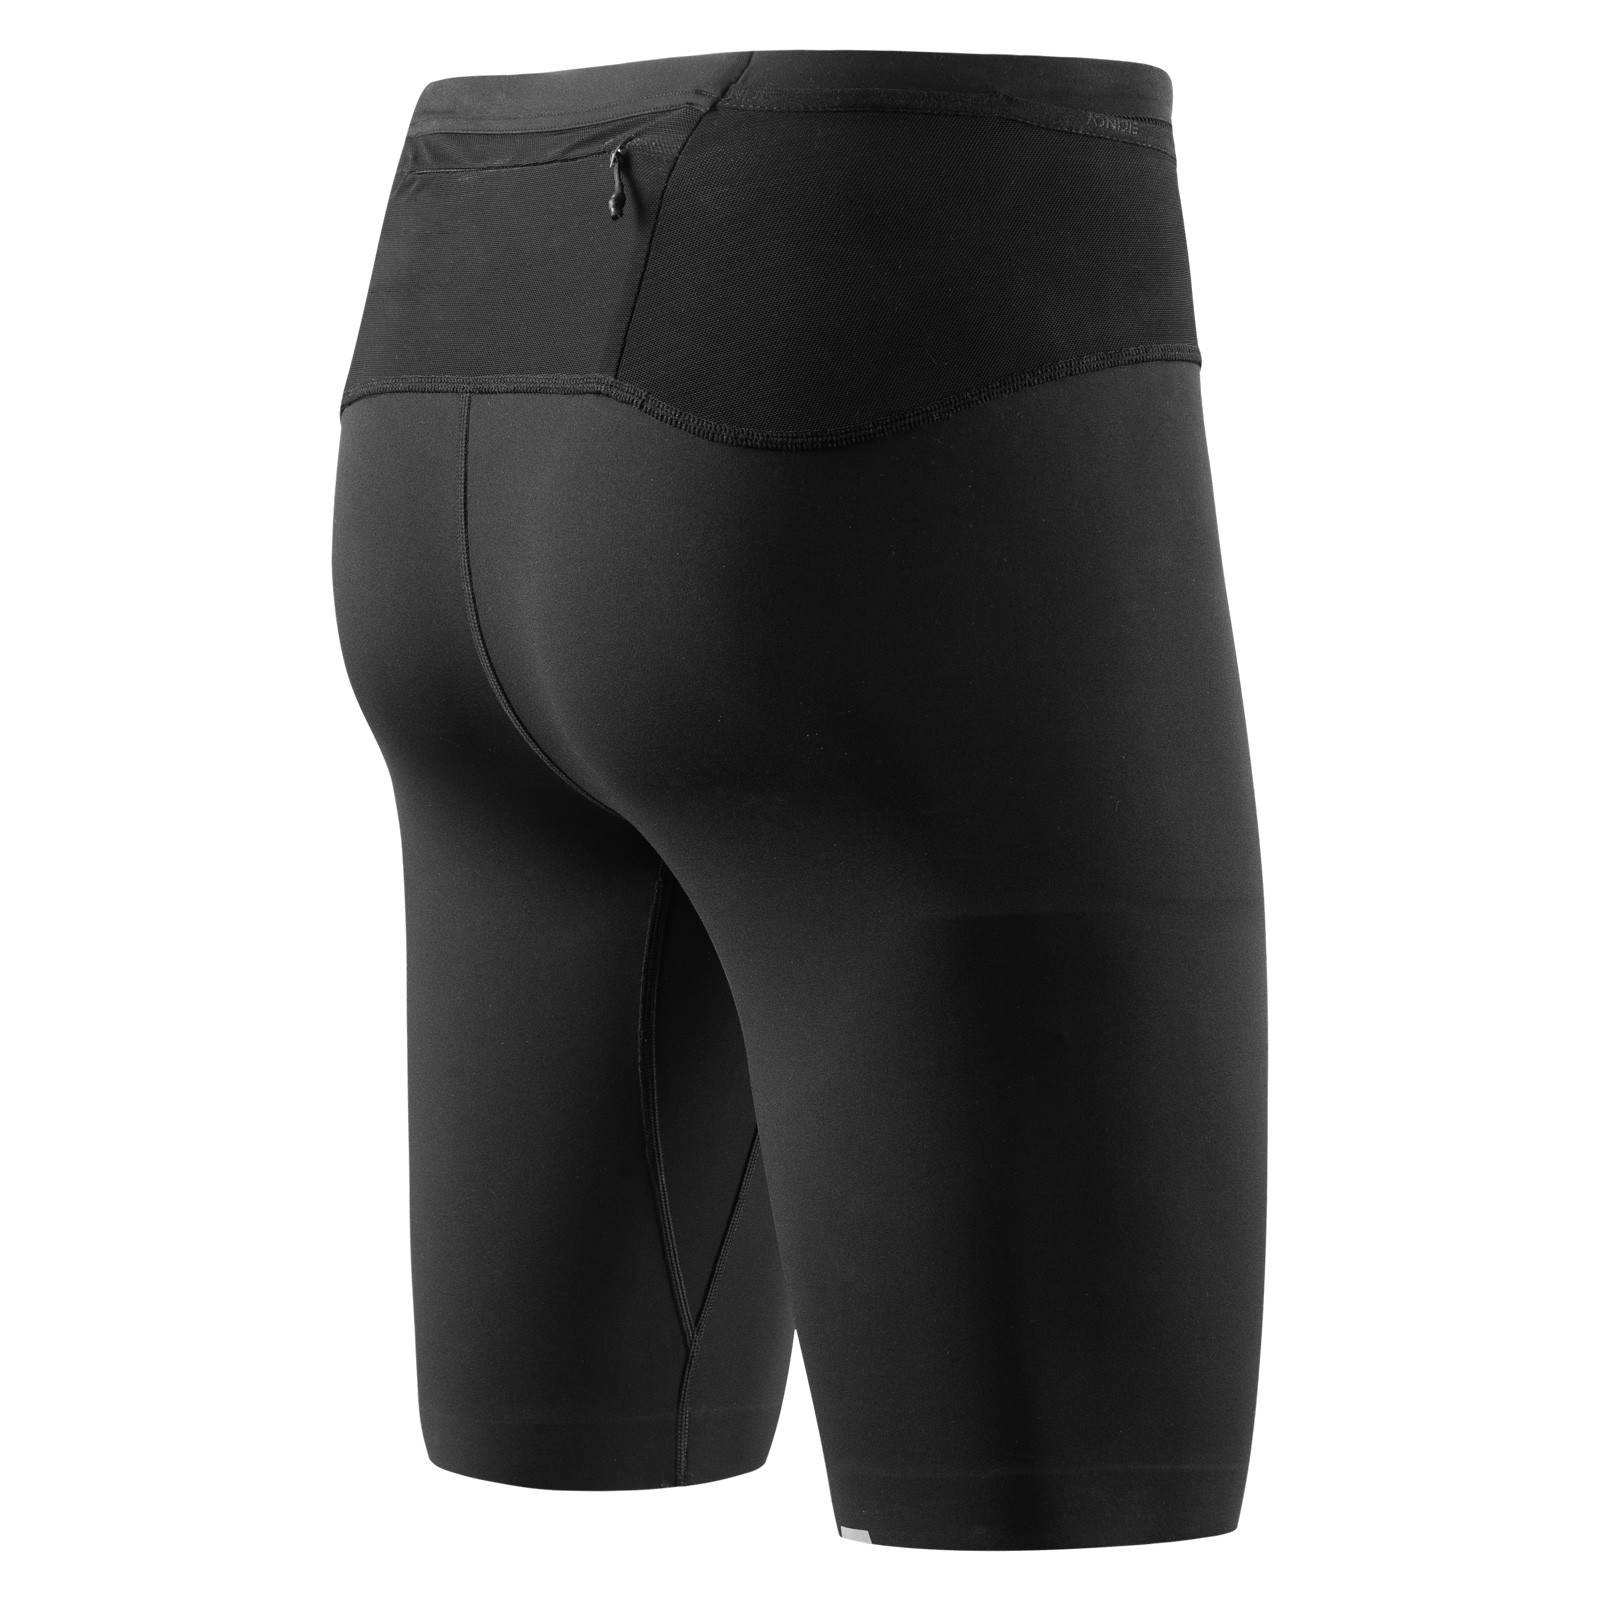 Men's Compression Running Pants | FlipBelt.com